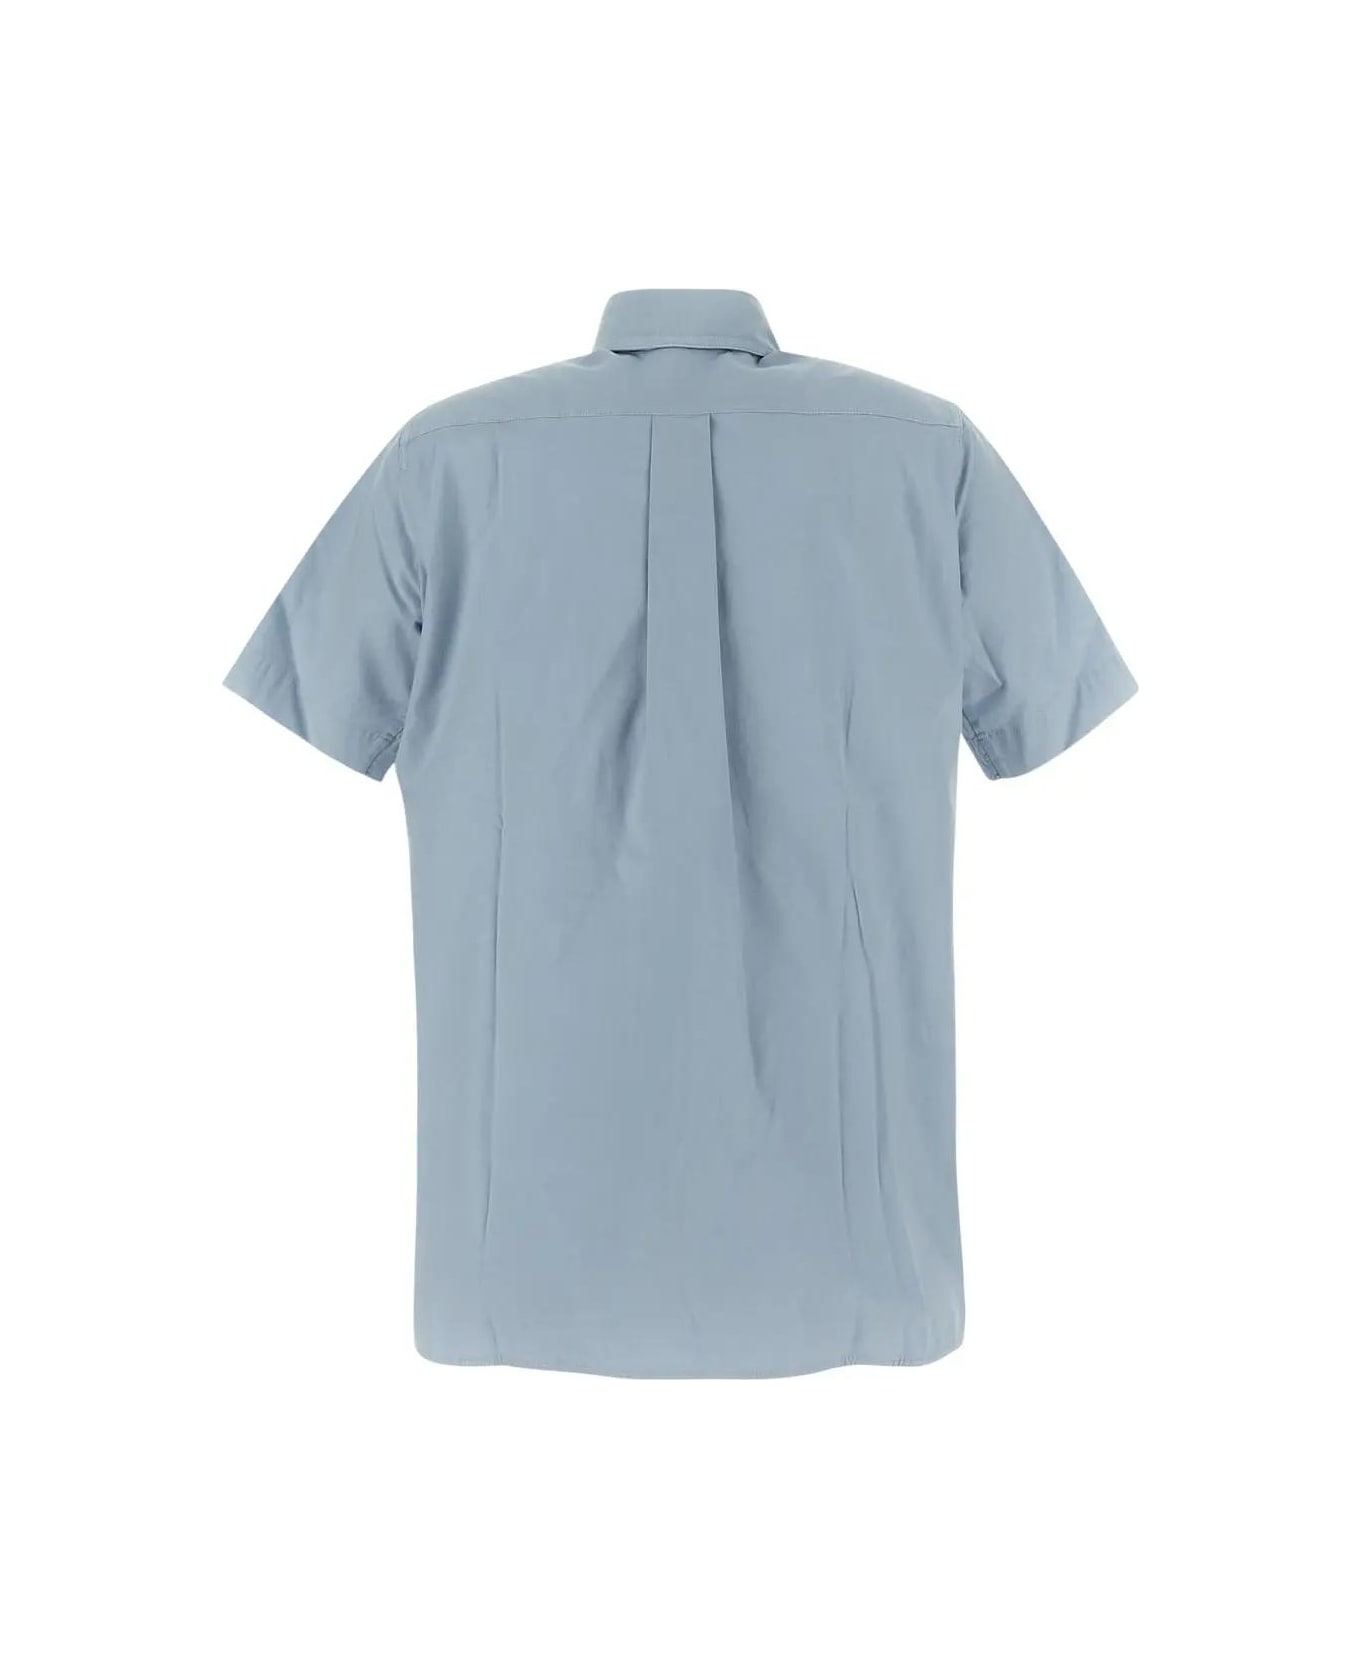 Max Mara Classic Shirt Max Mara - LIGHT BLUE シャツ